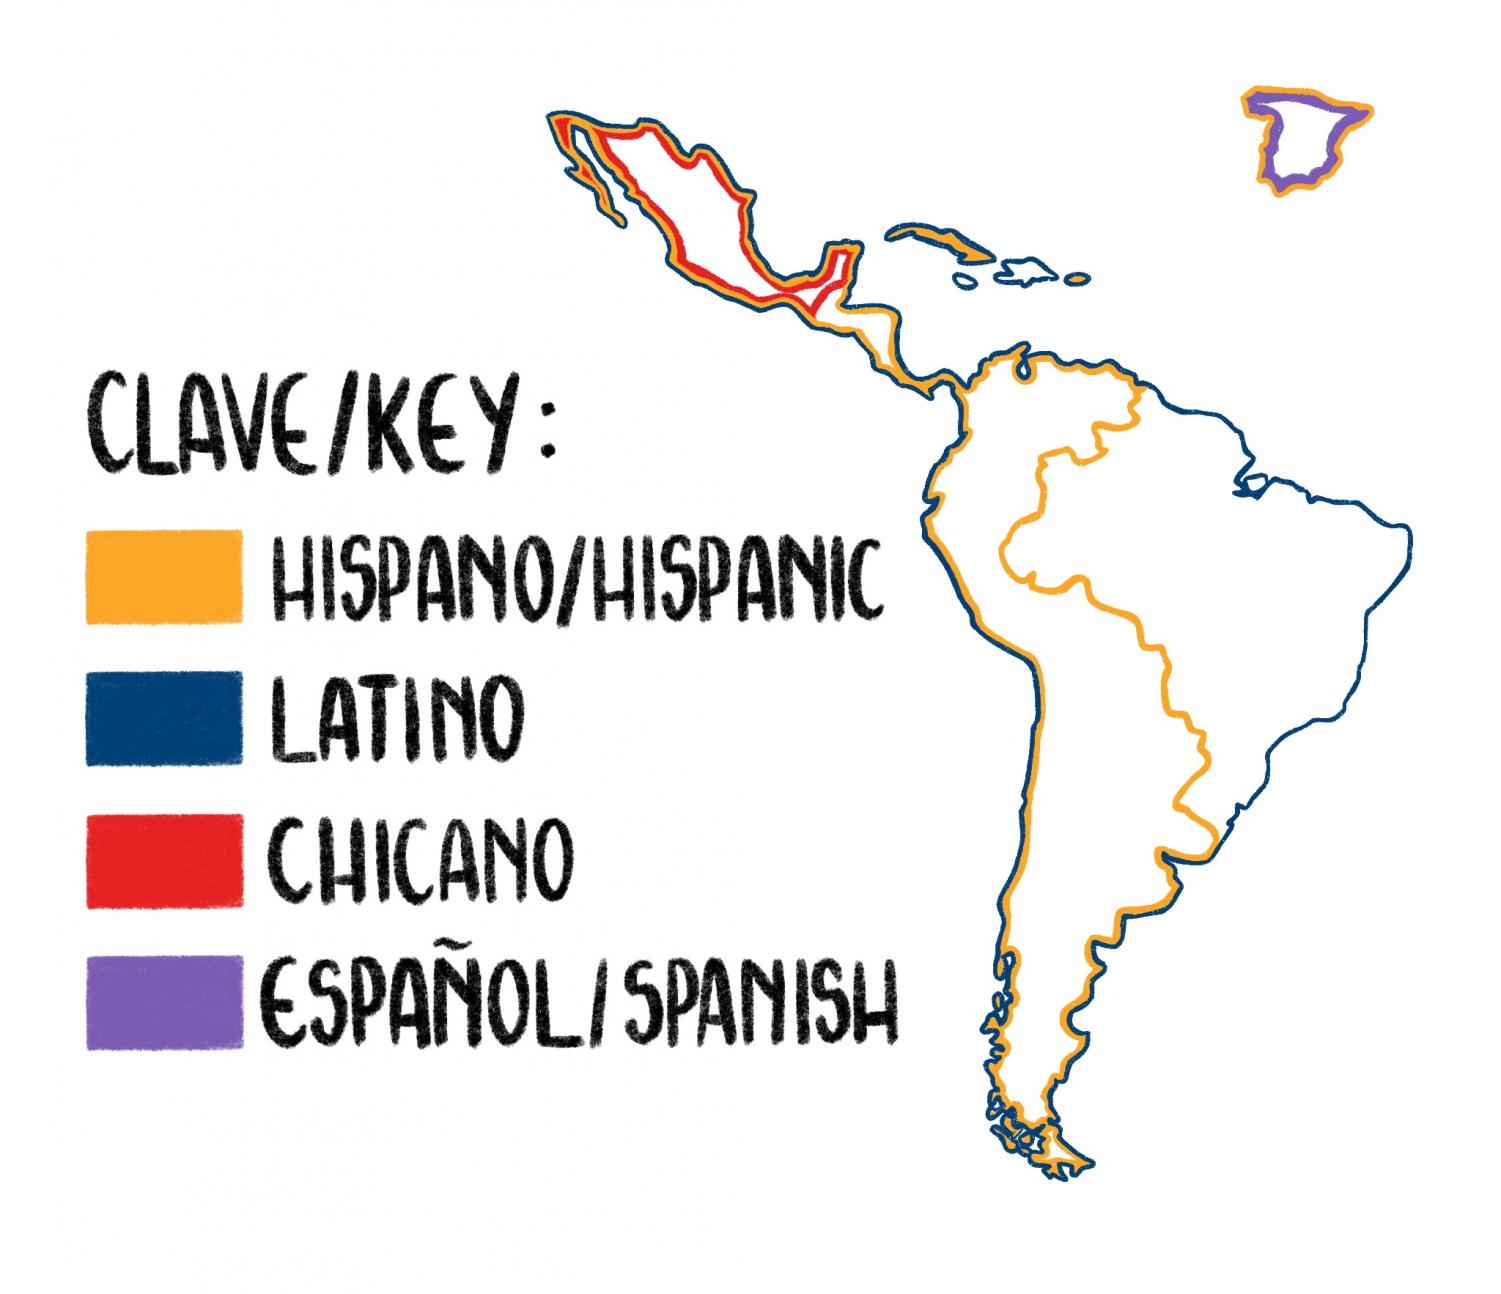 Latino / Chicano